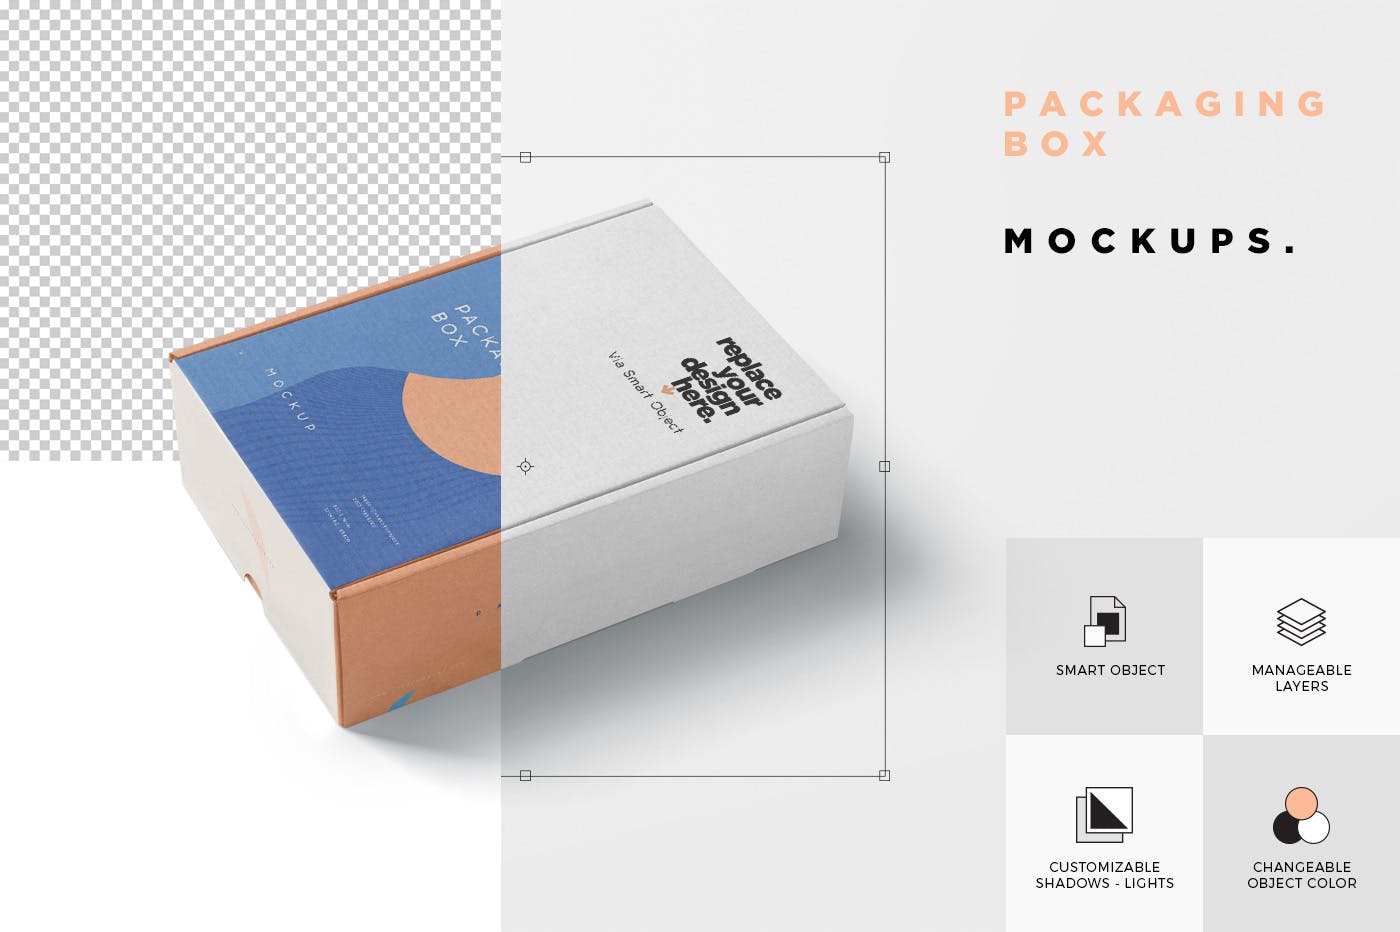 矩形包装盒设计效果图多角度预览样机 5 Rectangular Packaging Box Mockups插图(6)